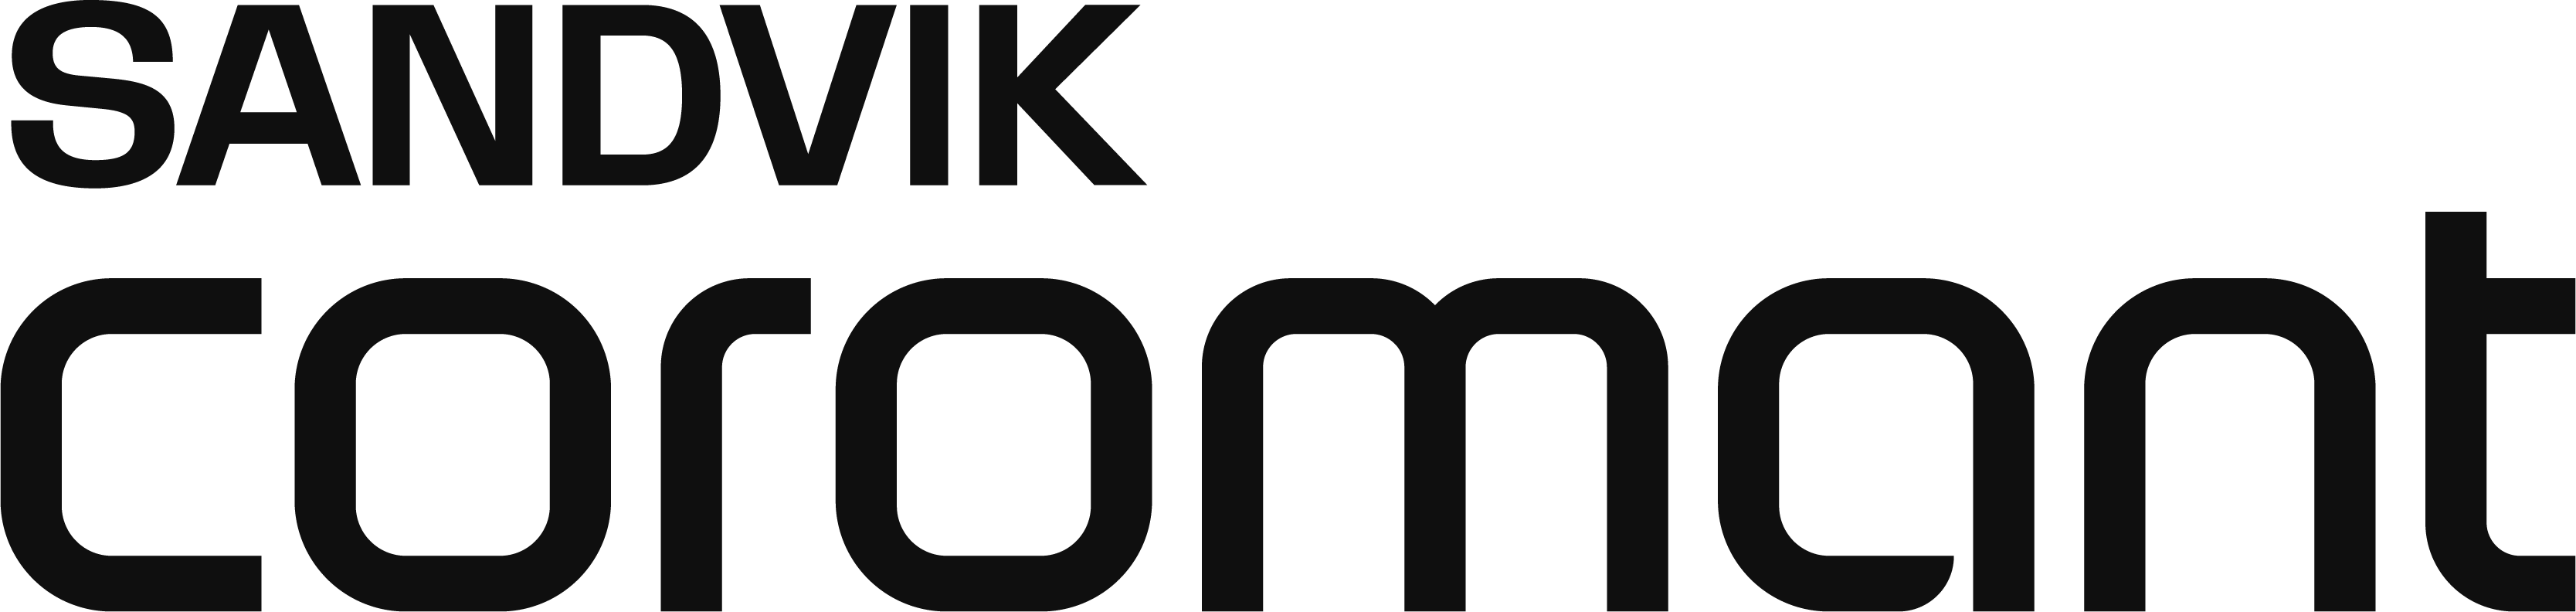 logo sandvik